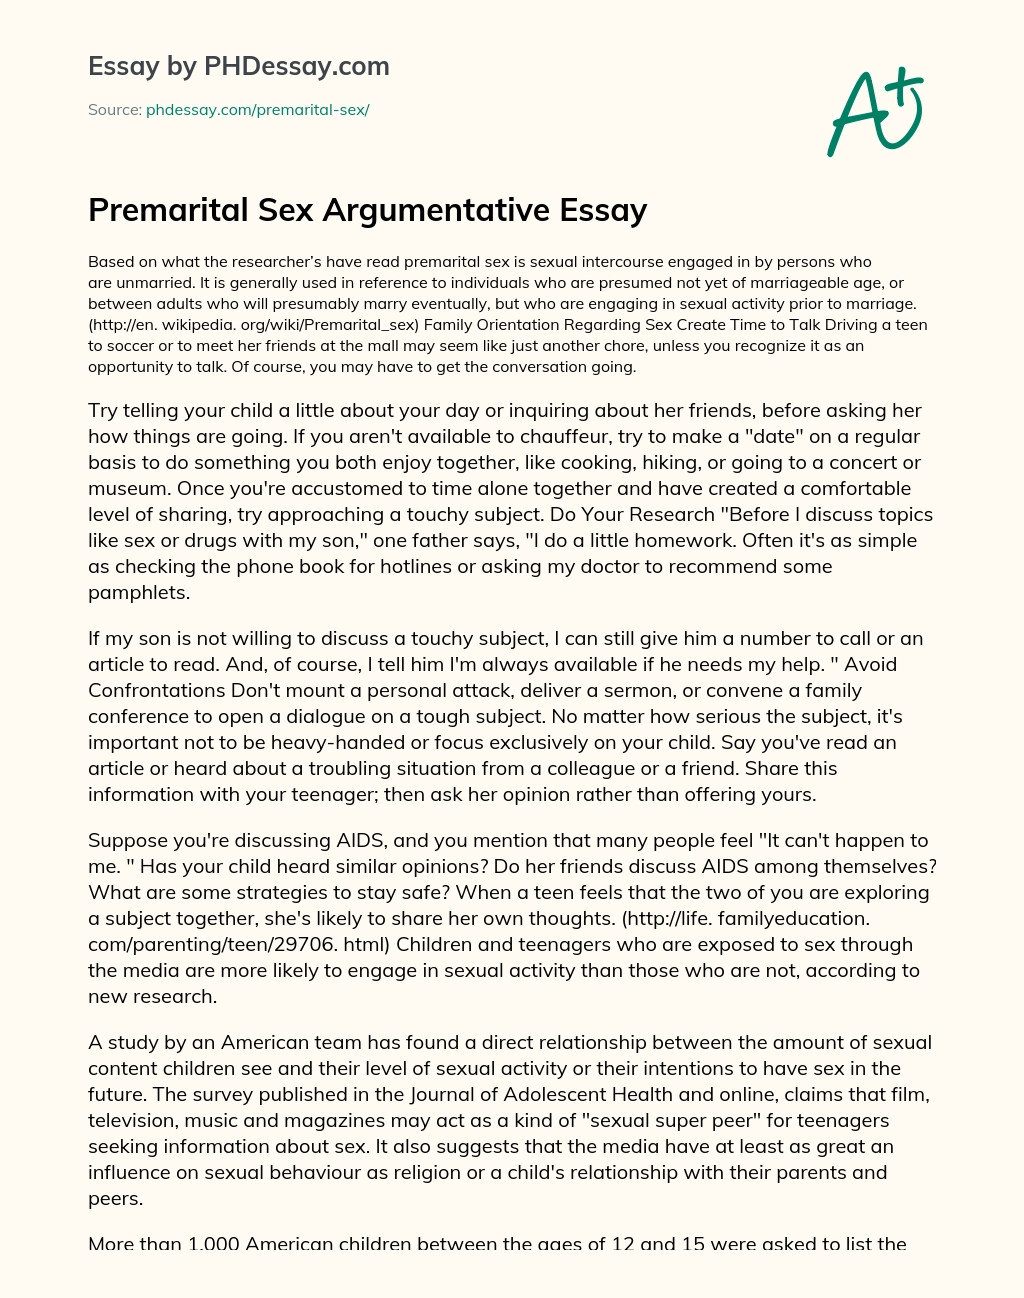 Premarital Sex Argumentative Essay